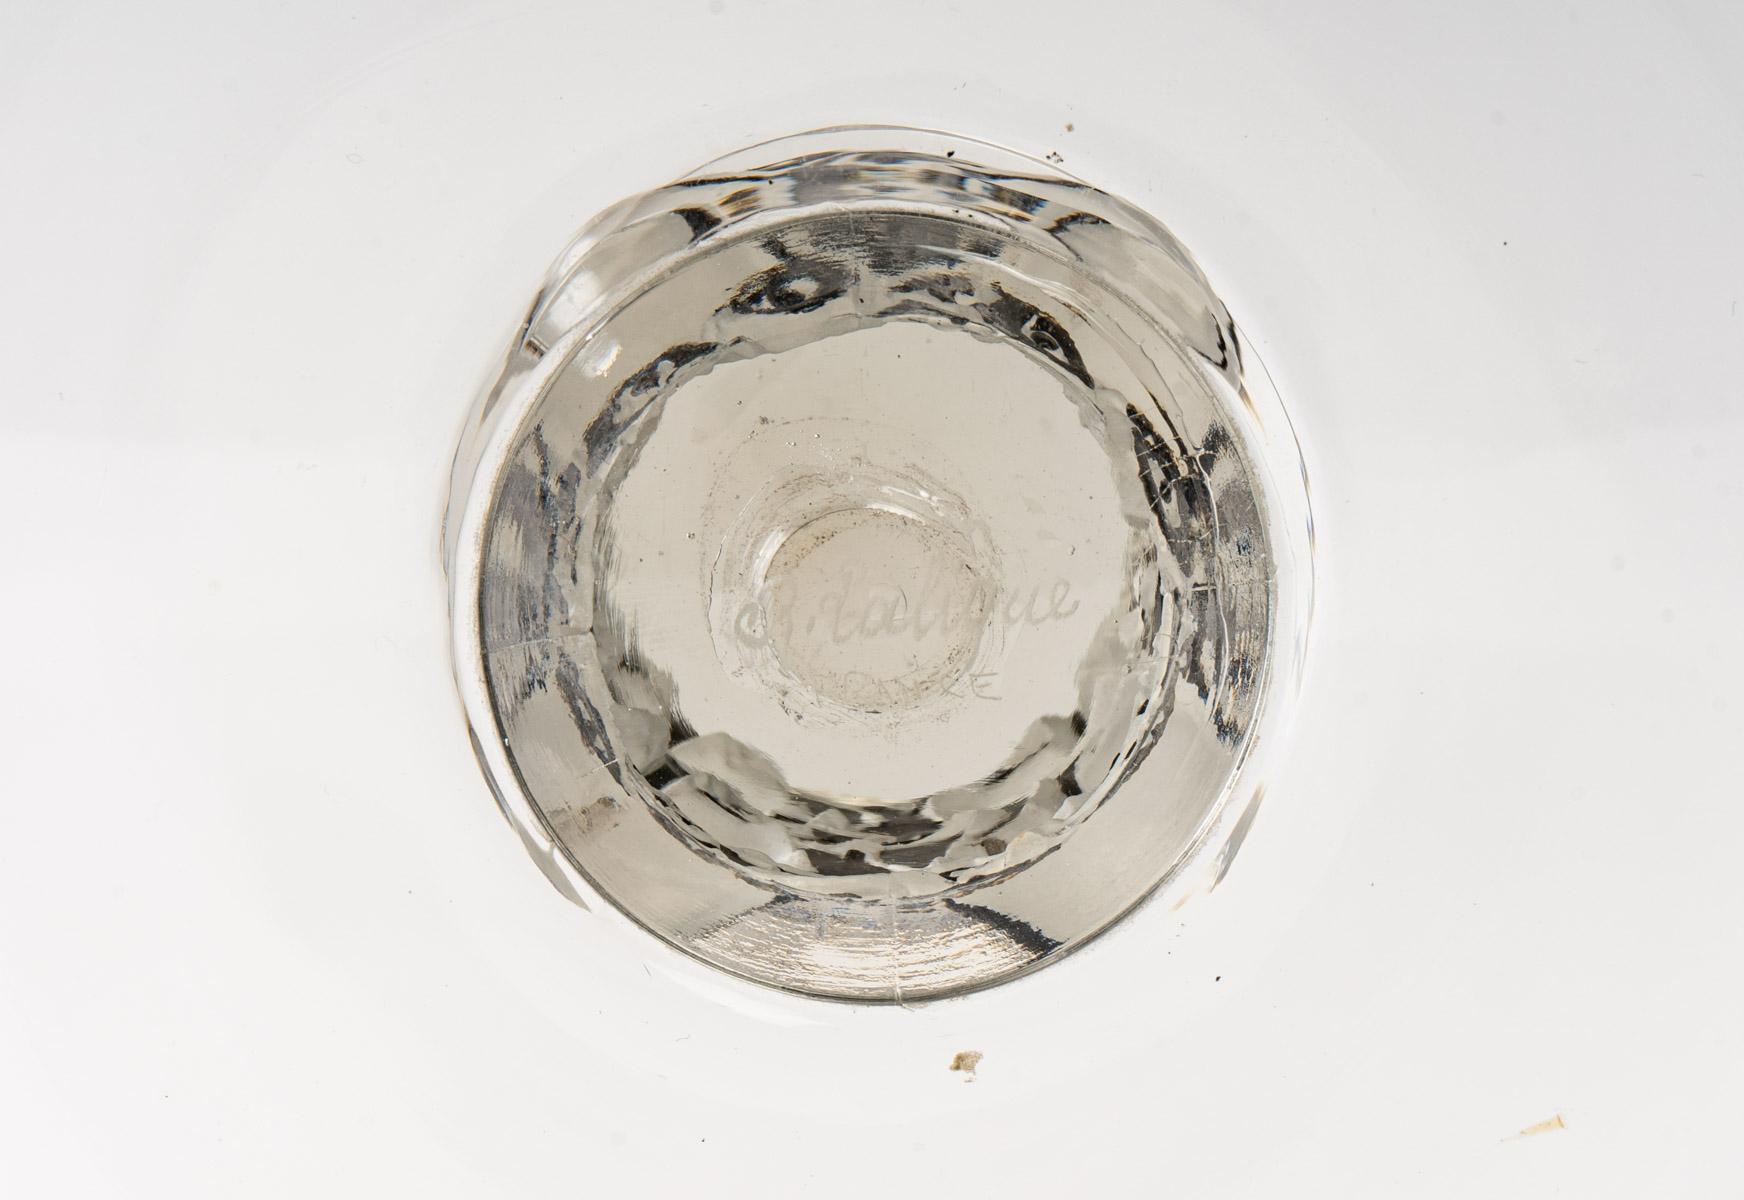 Molded 1926 René Lalique Saint Denis Bowl Vase Glass with Black Enamel, Fish Design